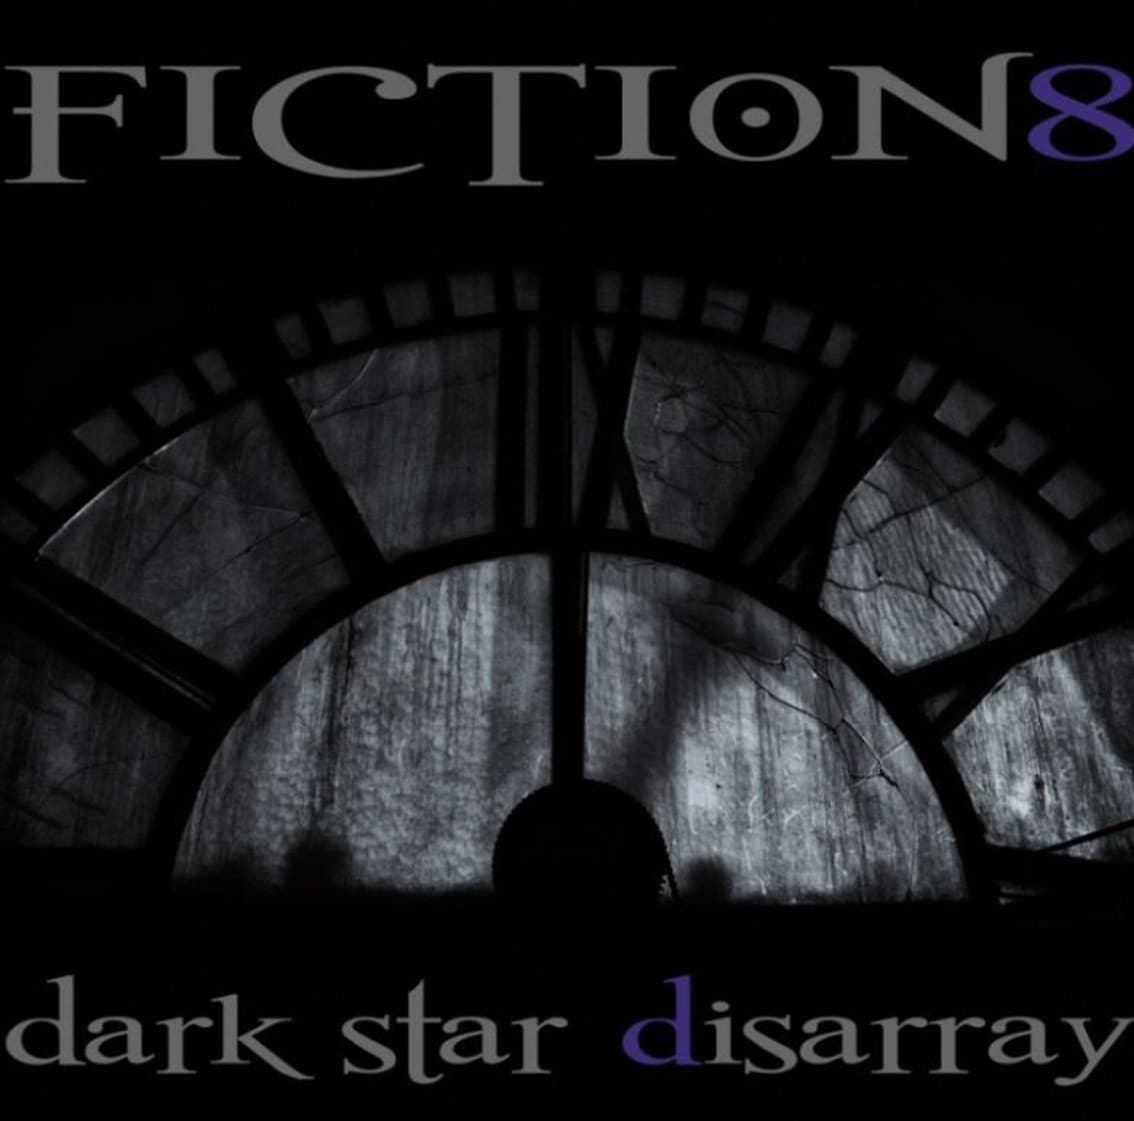 Fiction 8 prepare new album 'Dark Star Disarray' for September release